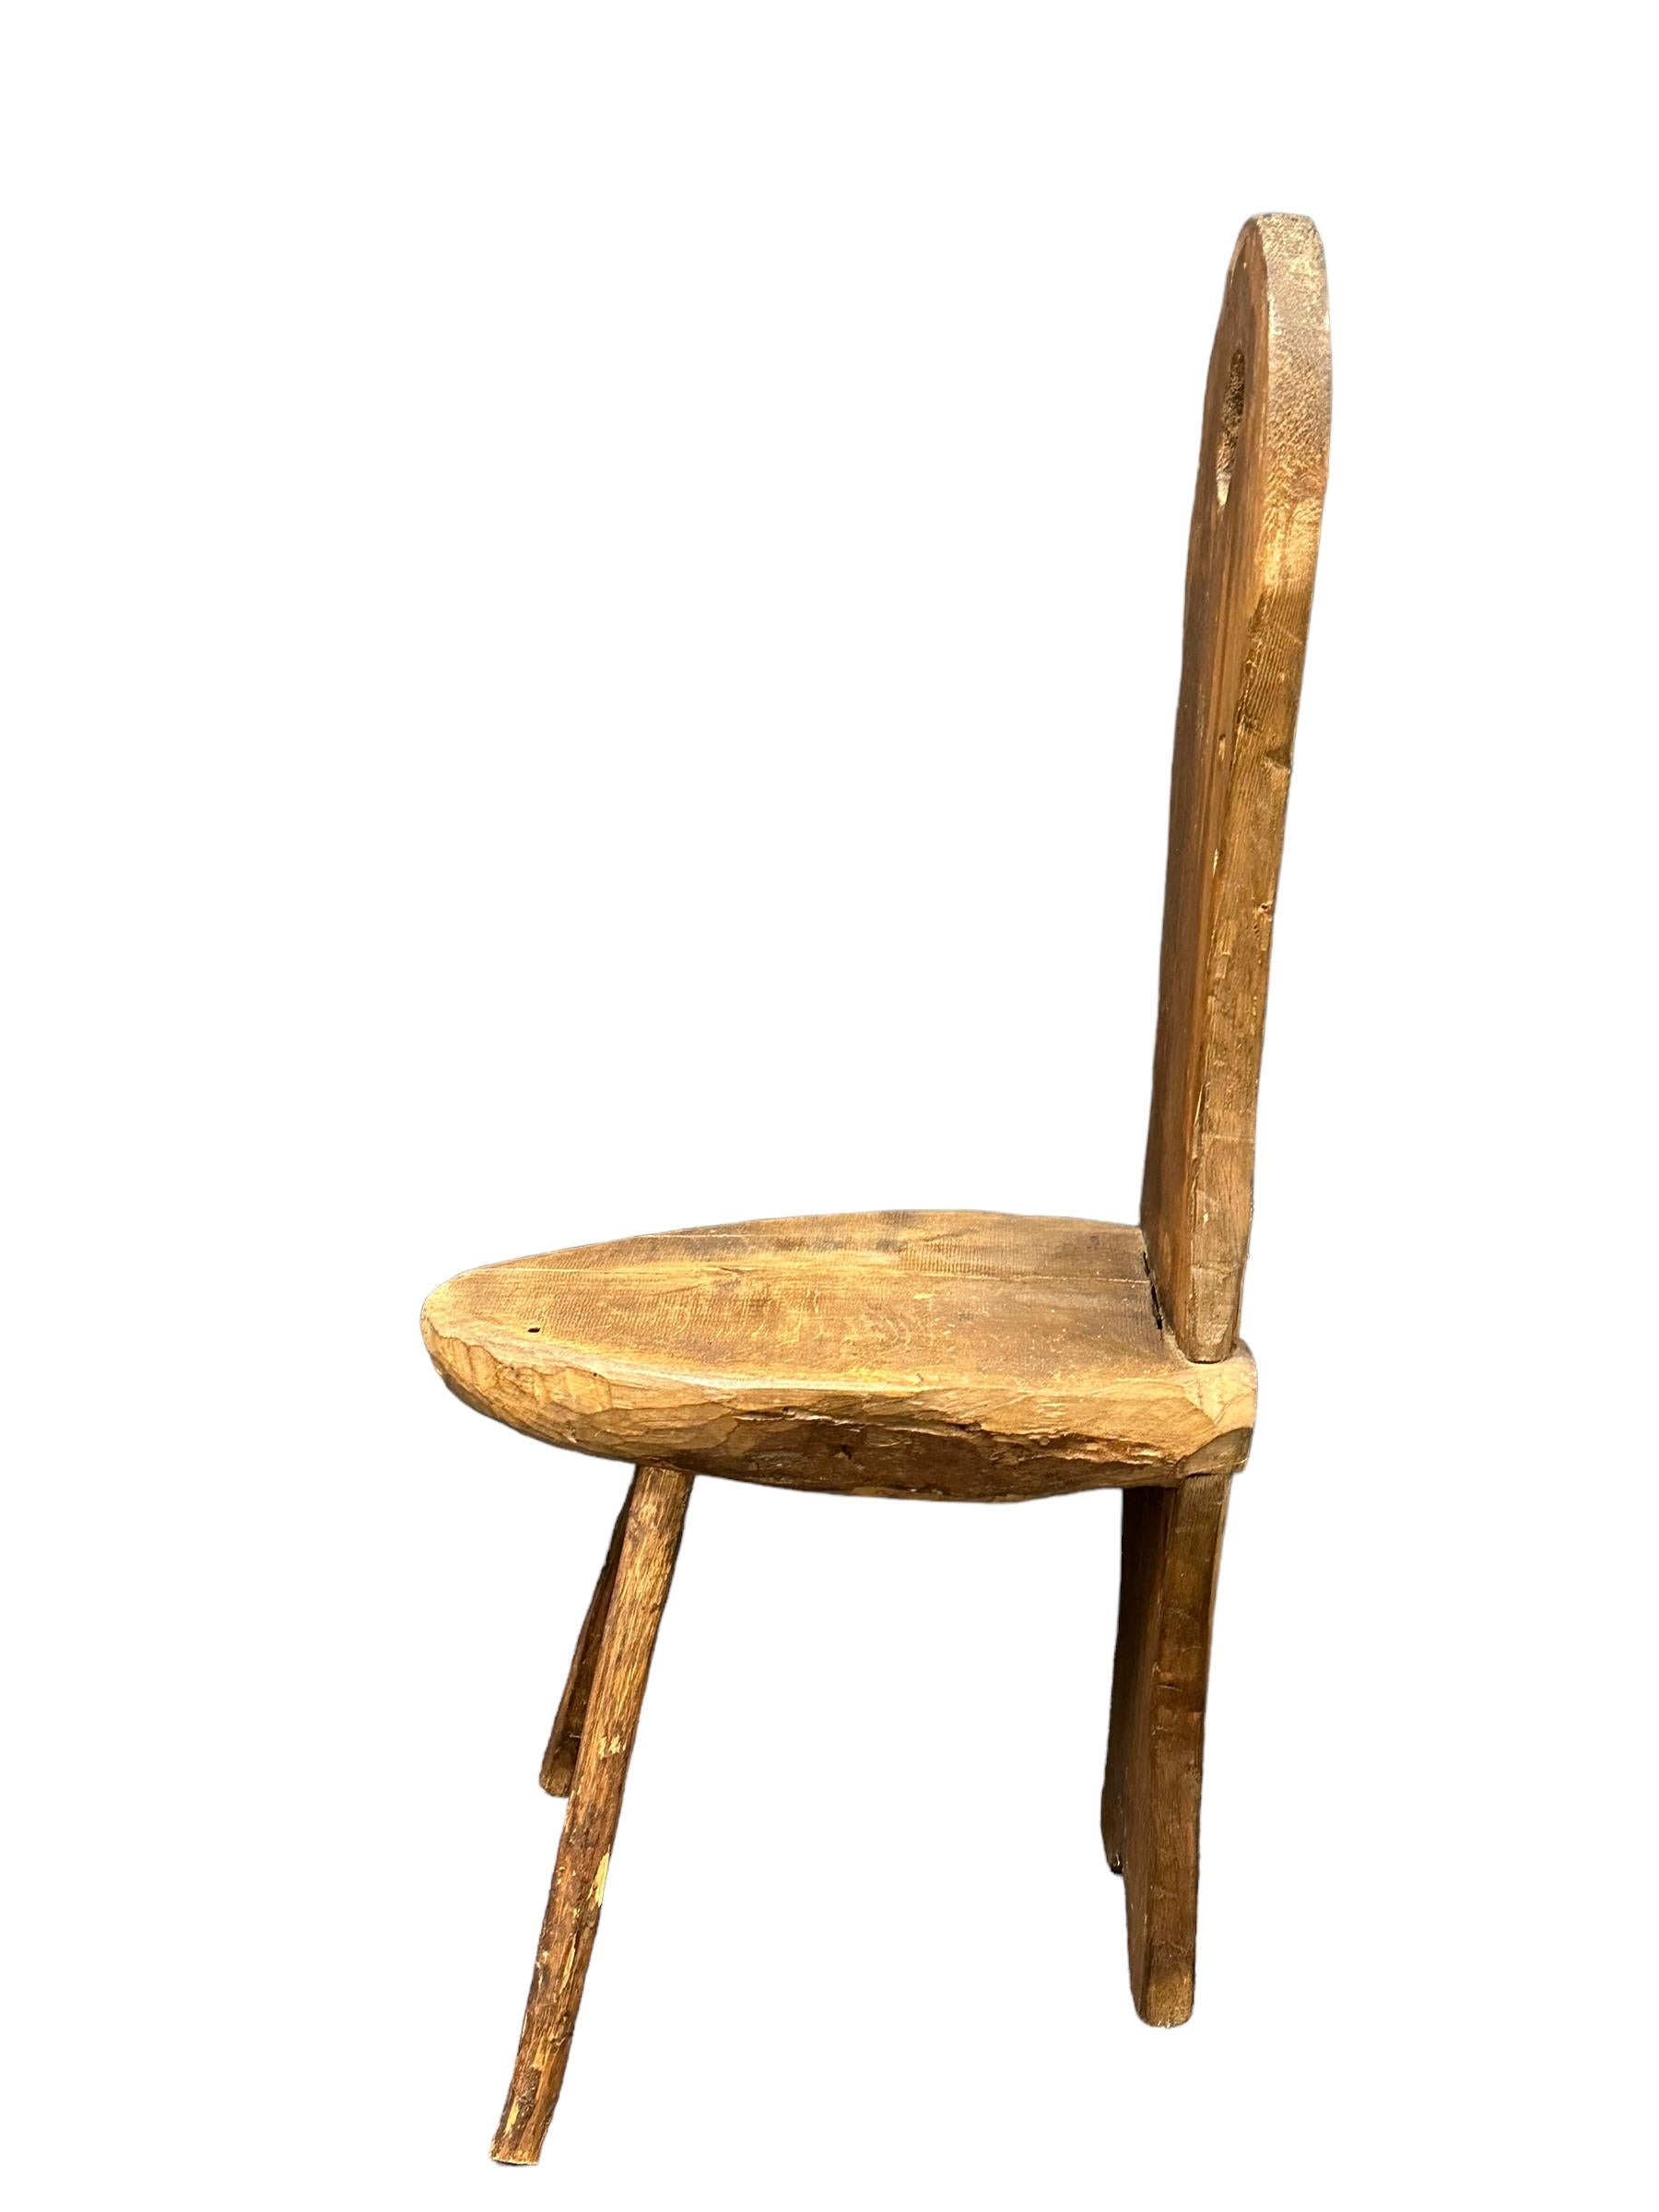 Intéressante chaise tripode en bois brutaliste d'Allemagne. Le siège a été découpé dans un tronc d'arbre. Historiquement utilisée comme chaise dans les fermes allemandes au XIXe siècle, cette version moderne et brutale fera un excellent objet de